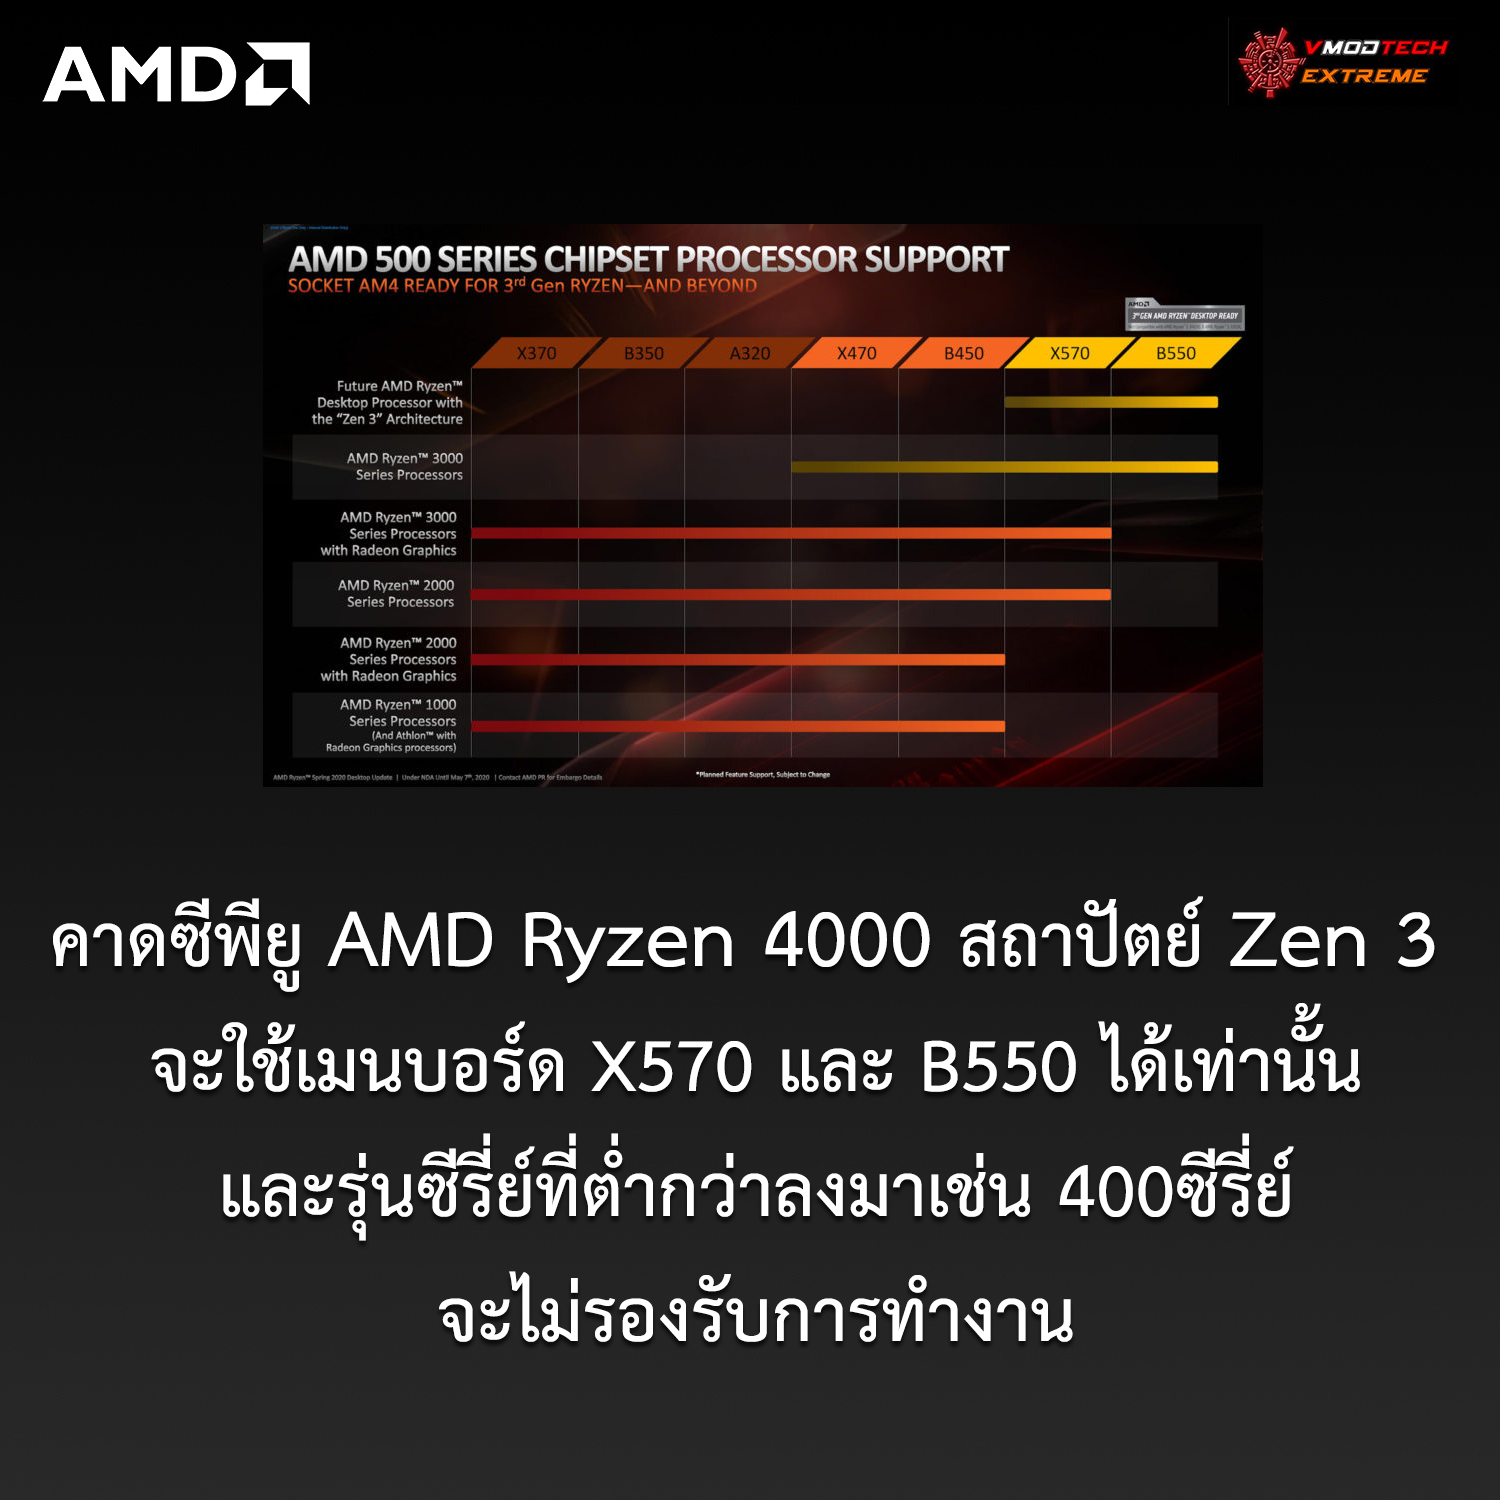 amd am4 ryzen4000 zen3 x570 b550 คาดซีพียู AMD Ryzen 4000 สถาปัตย์ Zen 3 จะใช้เมนบอร์ด X570 และ B550 ได้เท่านั้นและในรุ่นซีรี่ย์ที่ต่ำกว่าเช่น 400ซีรี่ย์ลงมาจะไม่รองรับการทำงาน